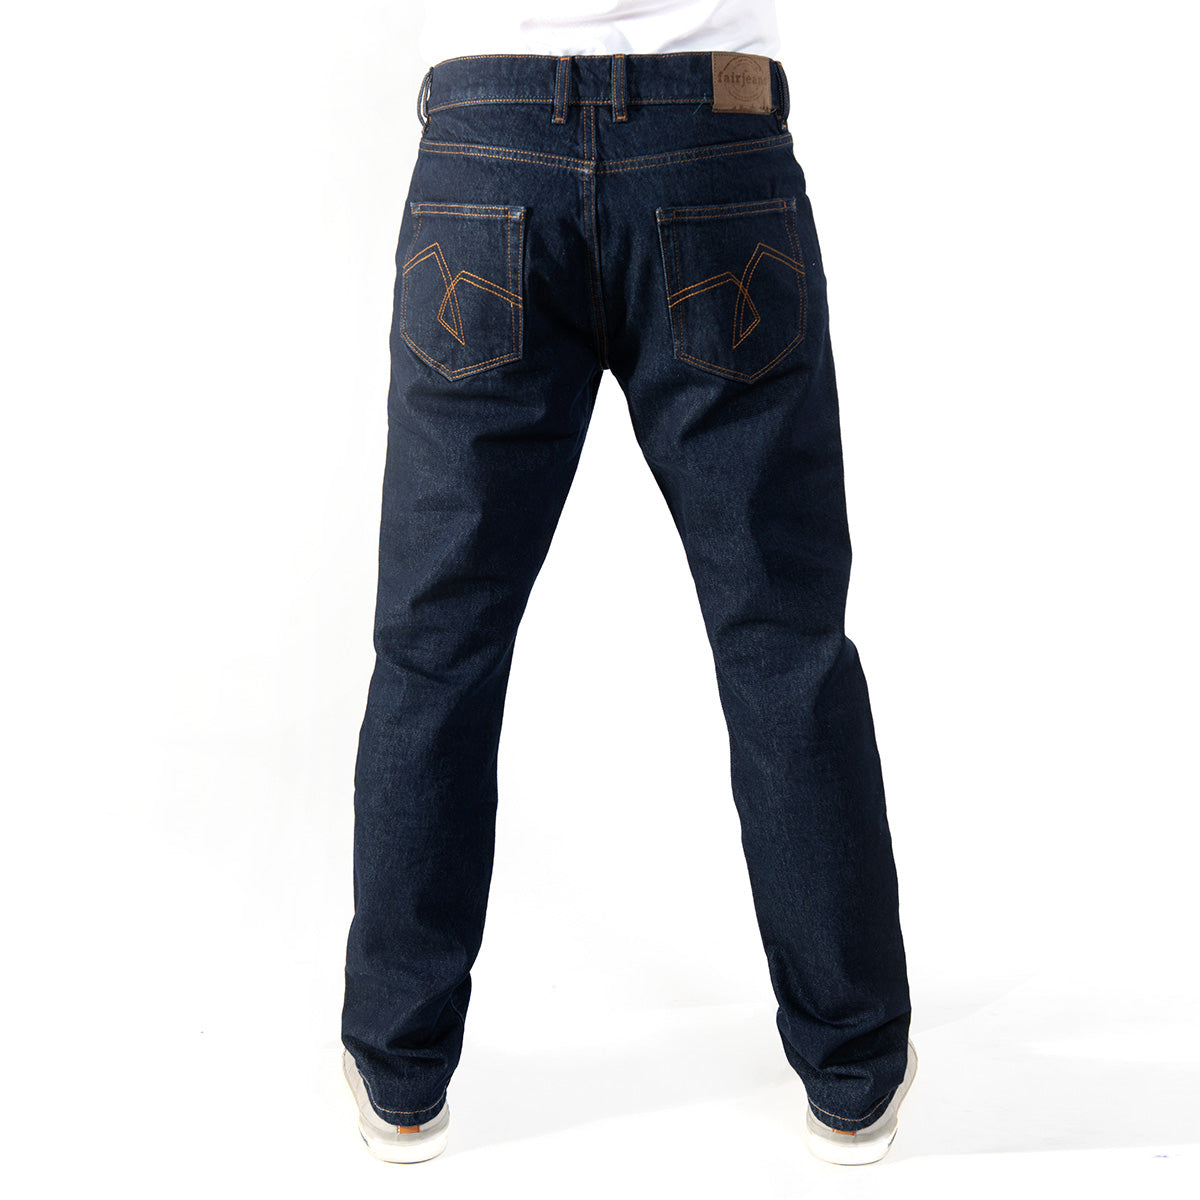 Nachhaltige Jeans von fairjeans, ohne Elasthan, 100% Bio-Baumwolle, Regular Fit.